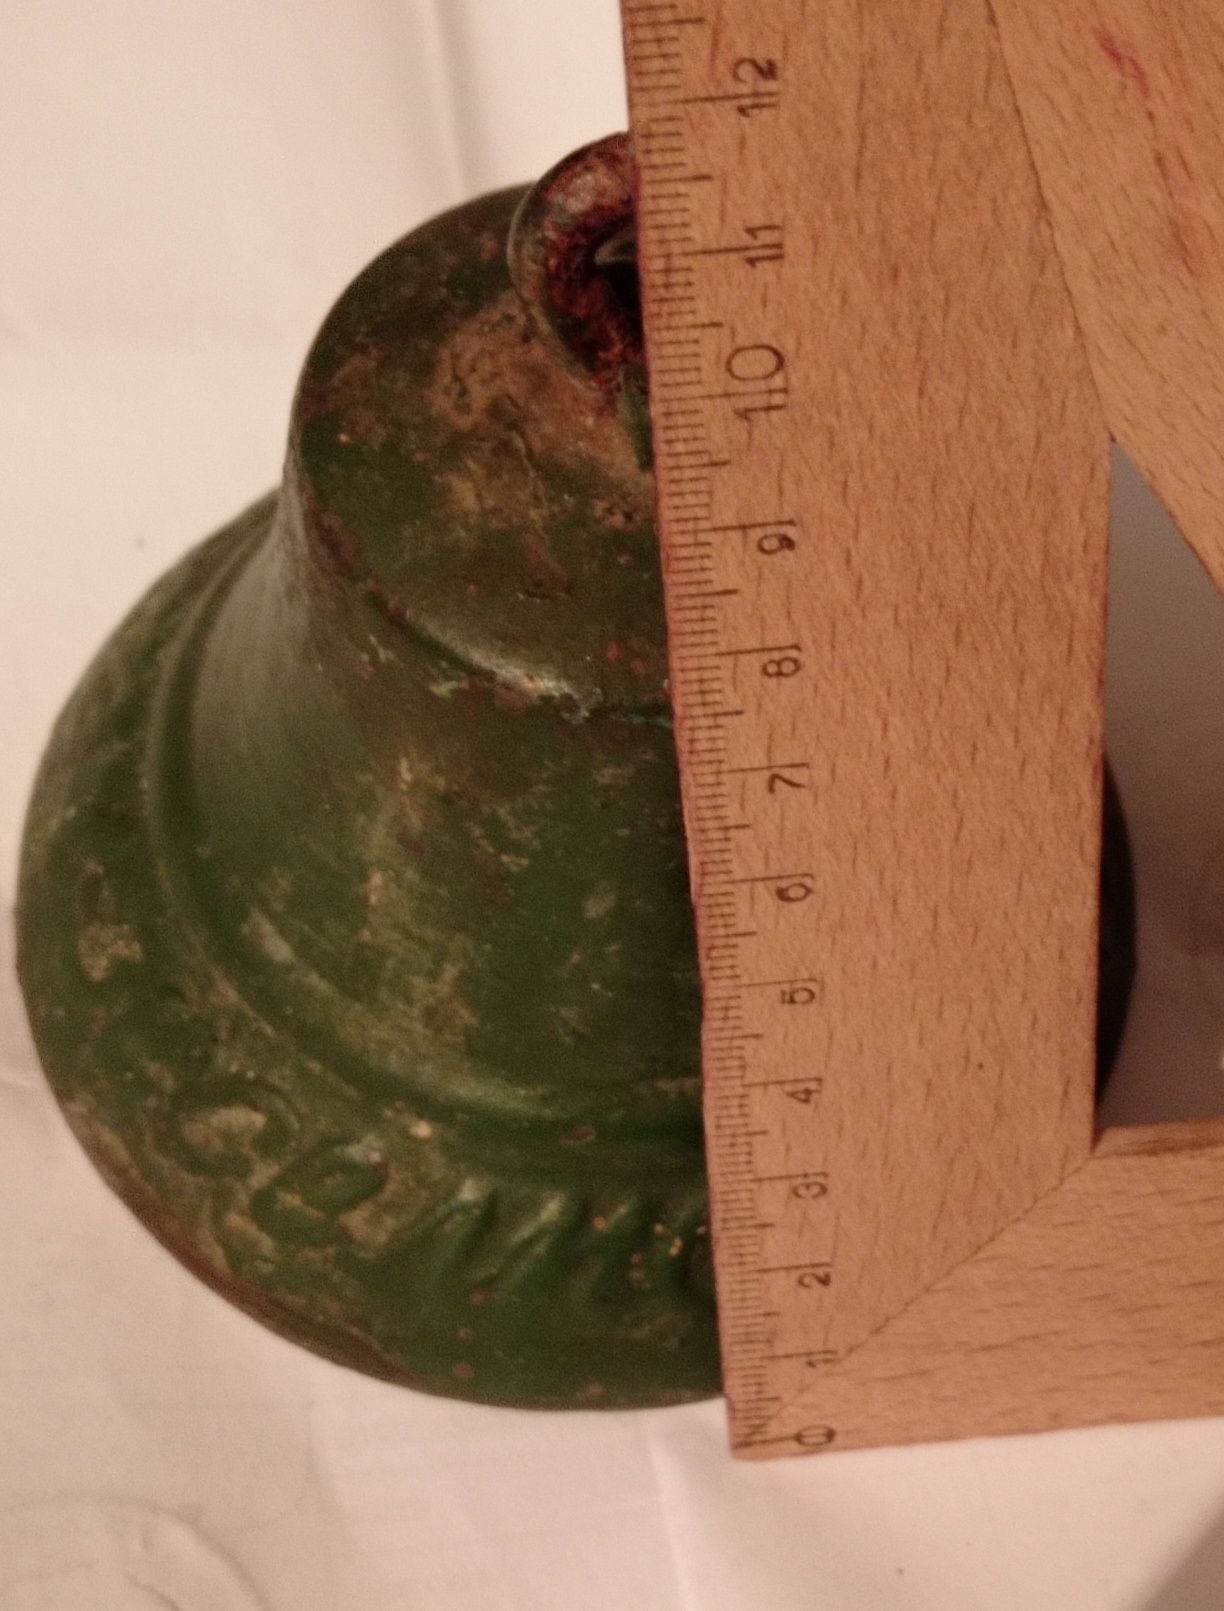 Vând sau schimb clopot vechi din bronz scris în chirilică.